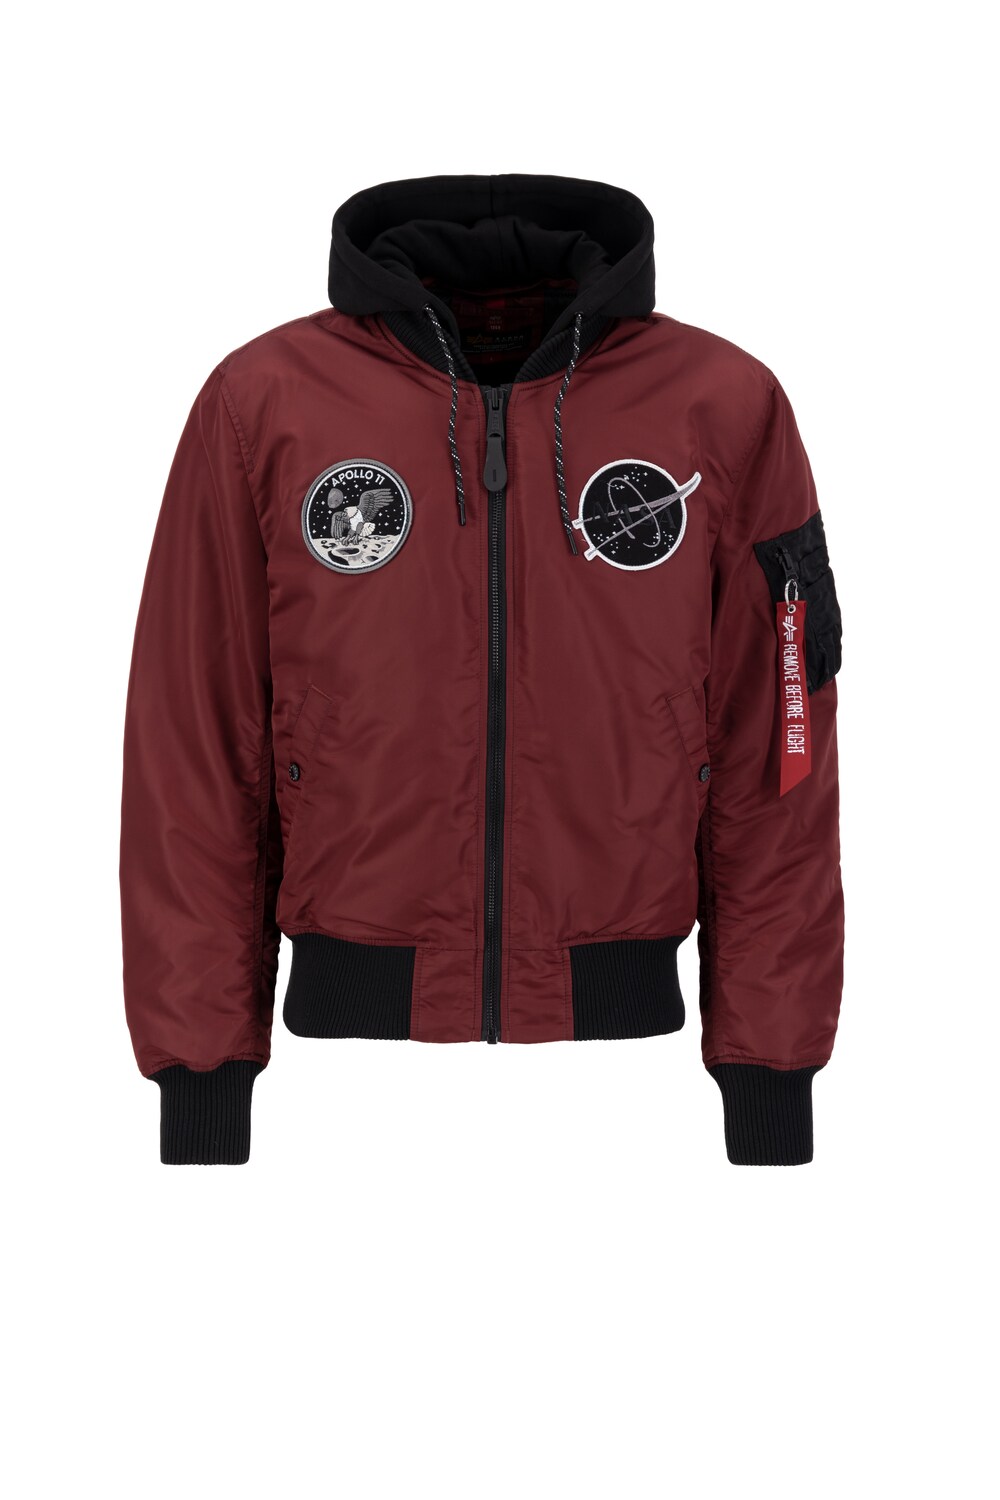 Межсезонная куртка Alpha Industries Flight Jacket MA-1 VF, красный куртка утепленная uniqlo ma 1 blouson flight черный